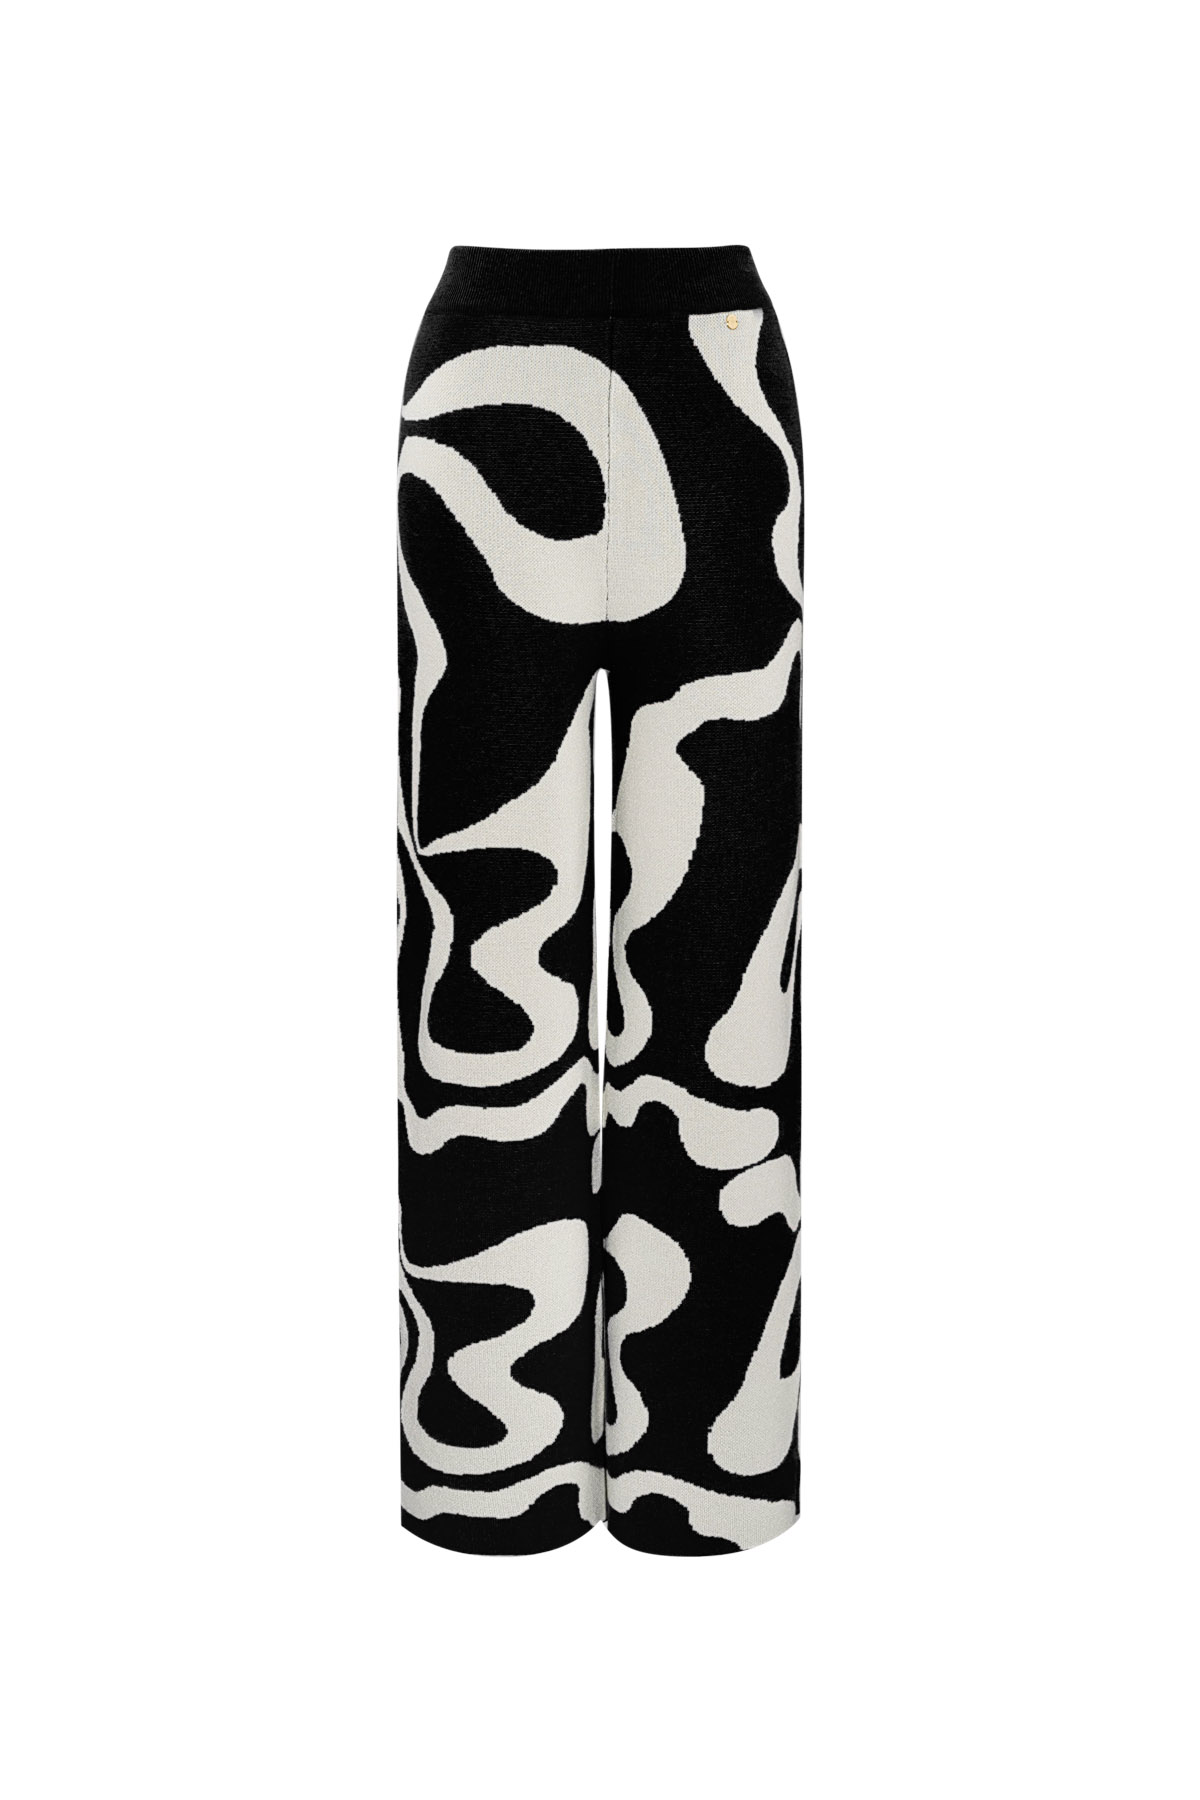 Pantalón orgánico estampado rayas - blanco y negro